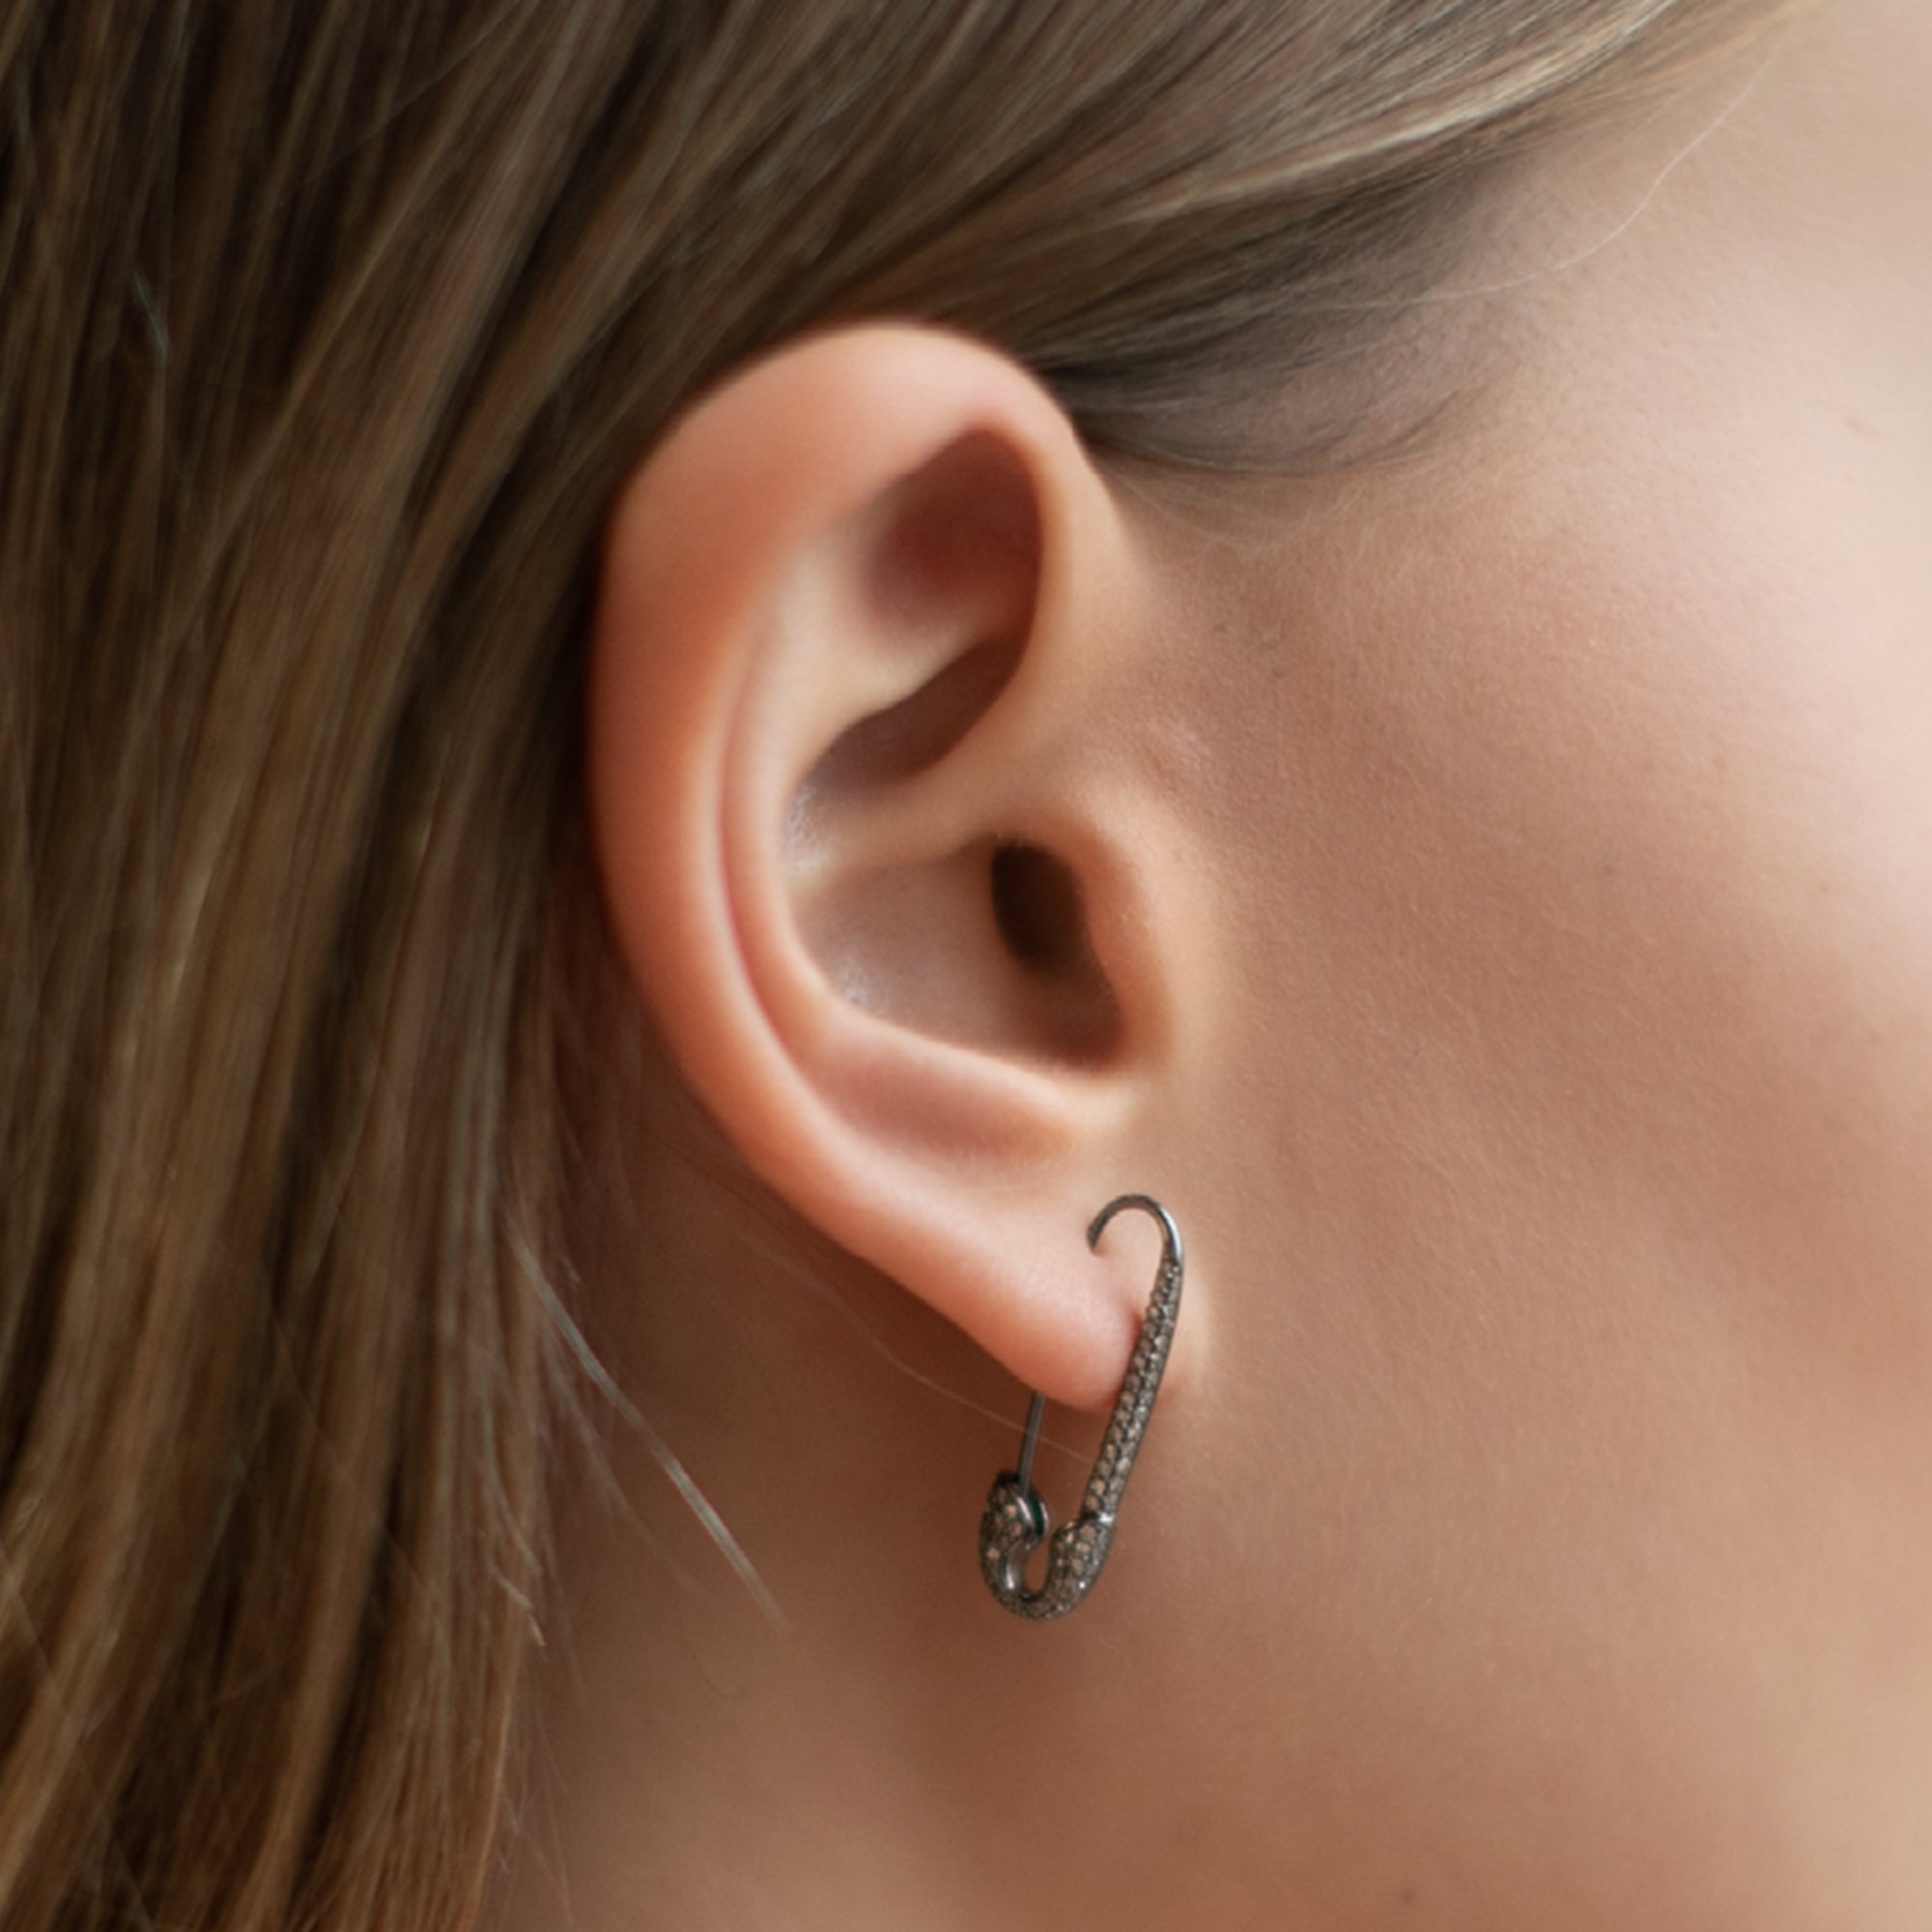 Amazon.com: Black Heart Safety Pin Earrings for Women Cartilage Earring  Stud Drop Dangle Hoop Earrings for Girls Minimalist Dainty Paperclip  Earrings Locking Earring Studs: Clothing, Shoes & Jewelry